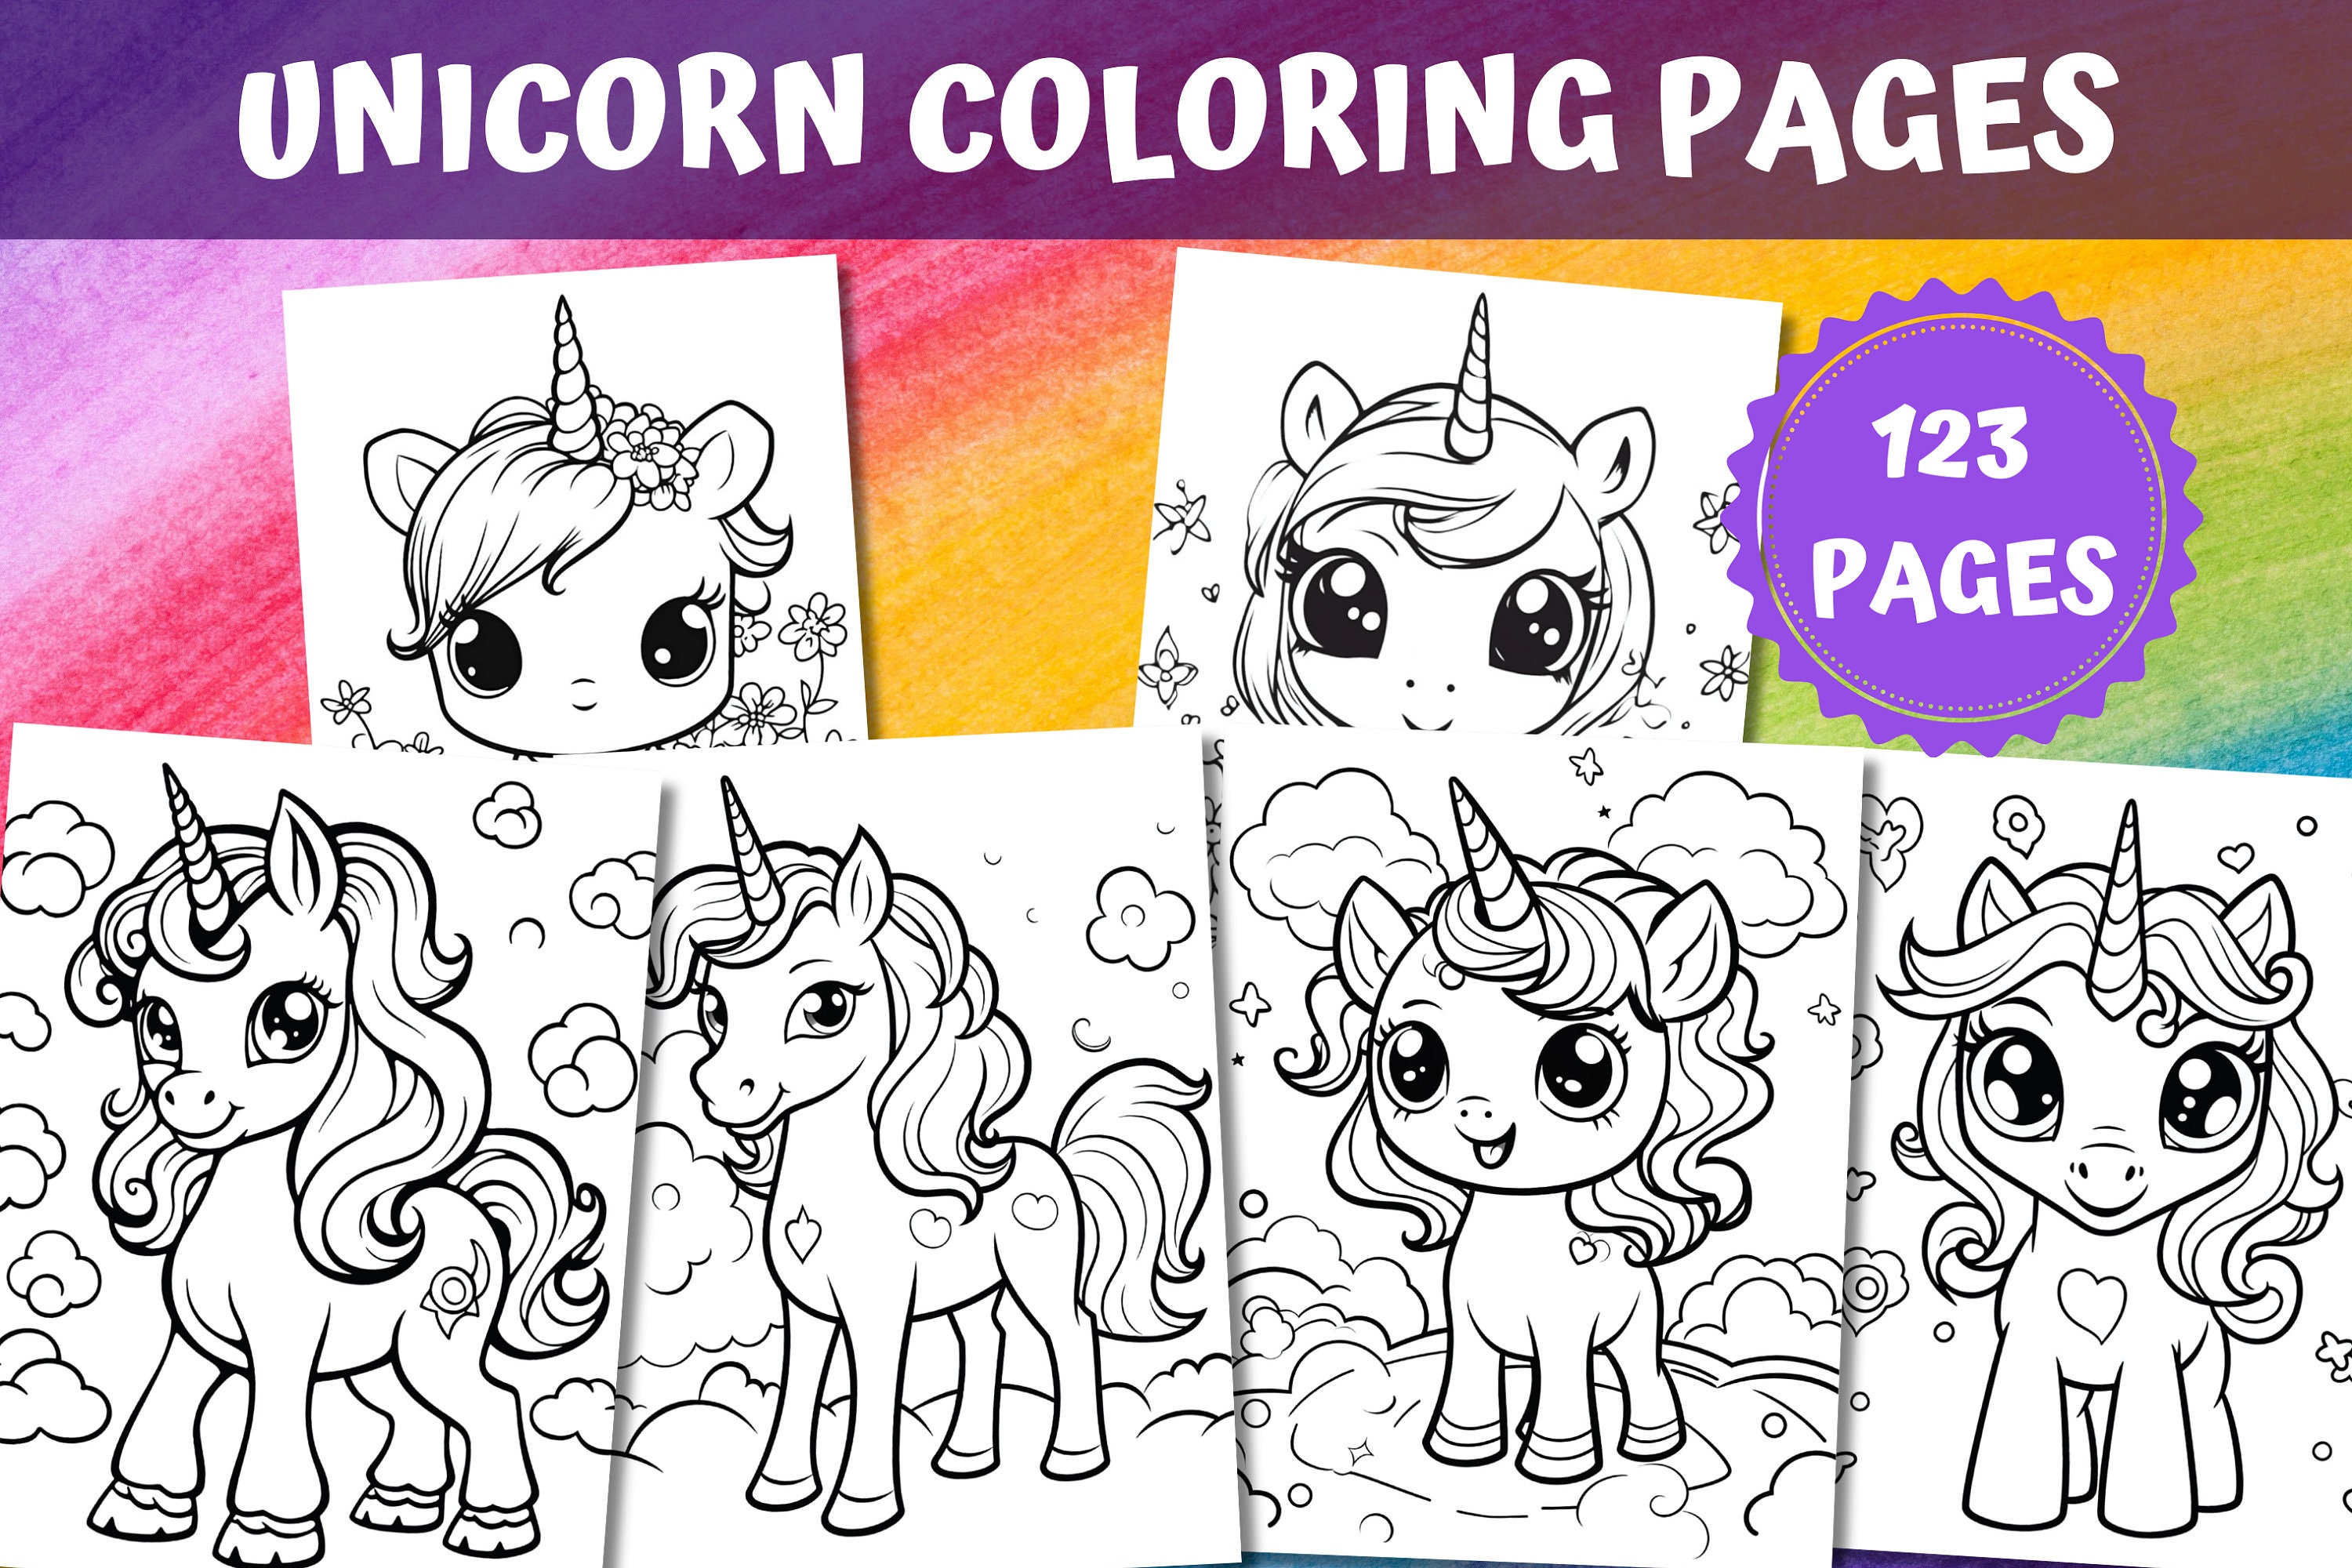 Unicorn Coloring Pages Unicorn Coloring Pages for Kids - Etsy